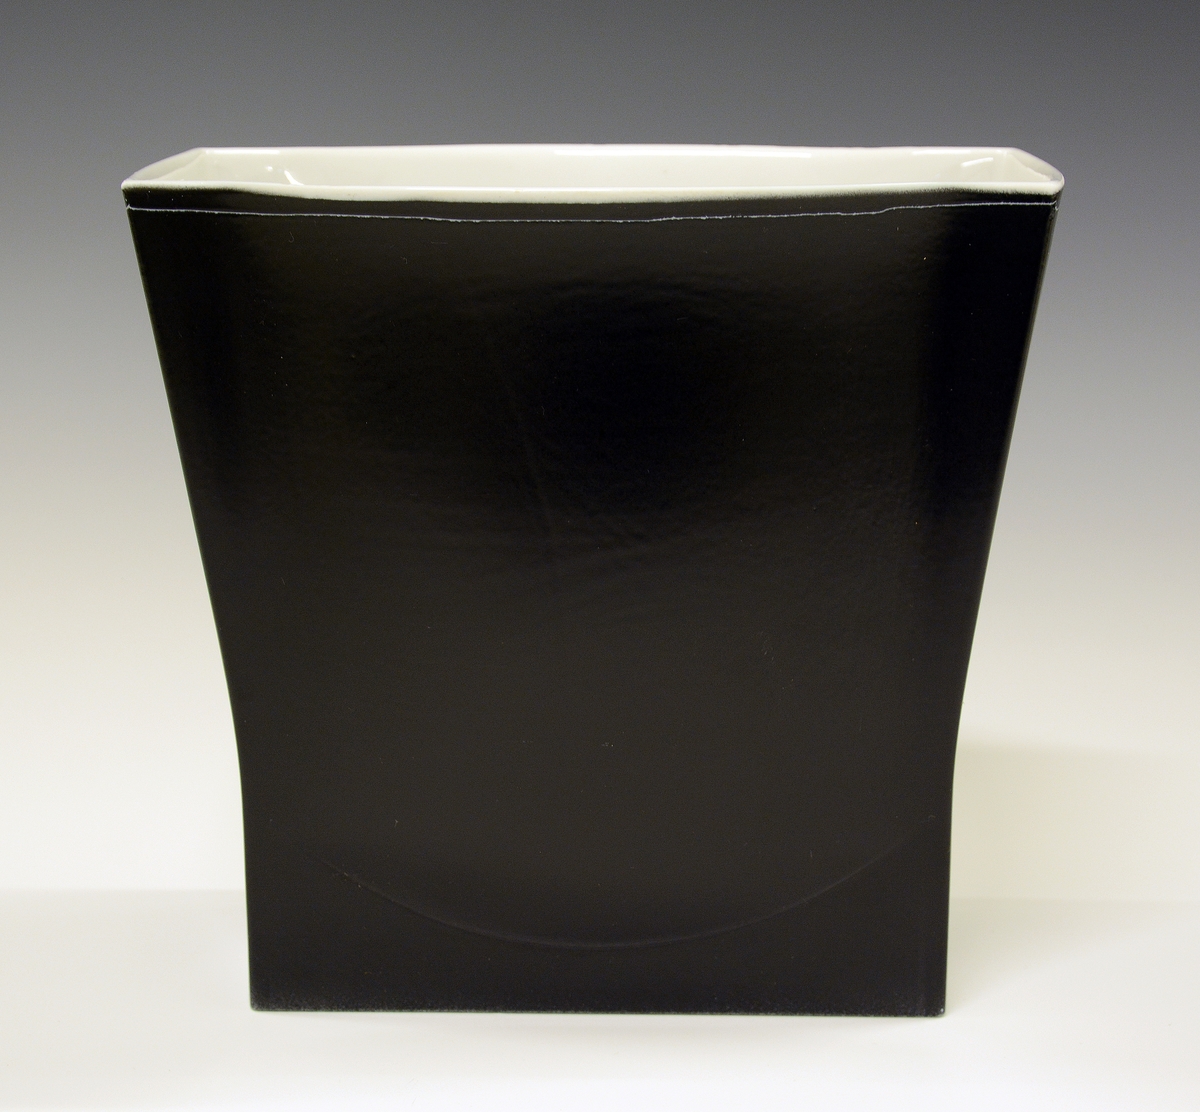 Vase i porselen. Rektangulær form. 
Kunstner: Leif Helge Enger.